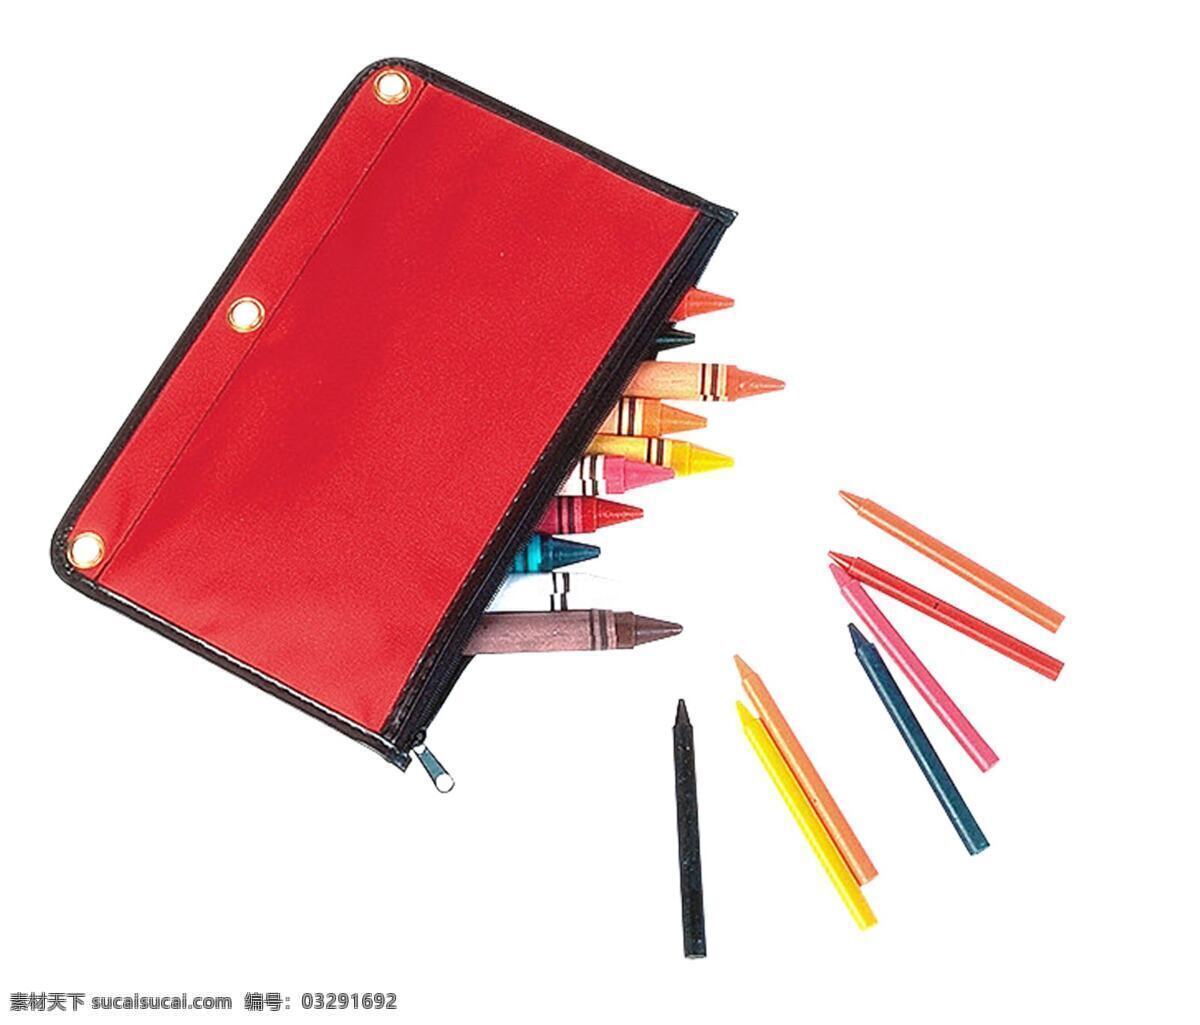 铅笔盒 彩色 铅笔 笔 绘画笔 彩色铅笔 文具 学习用品 办公学习 生活百科